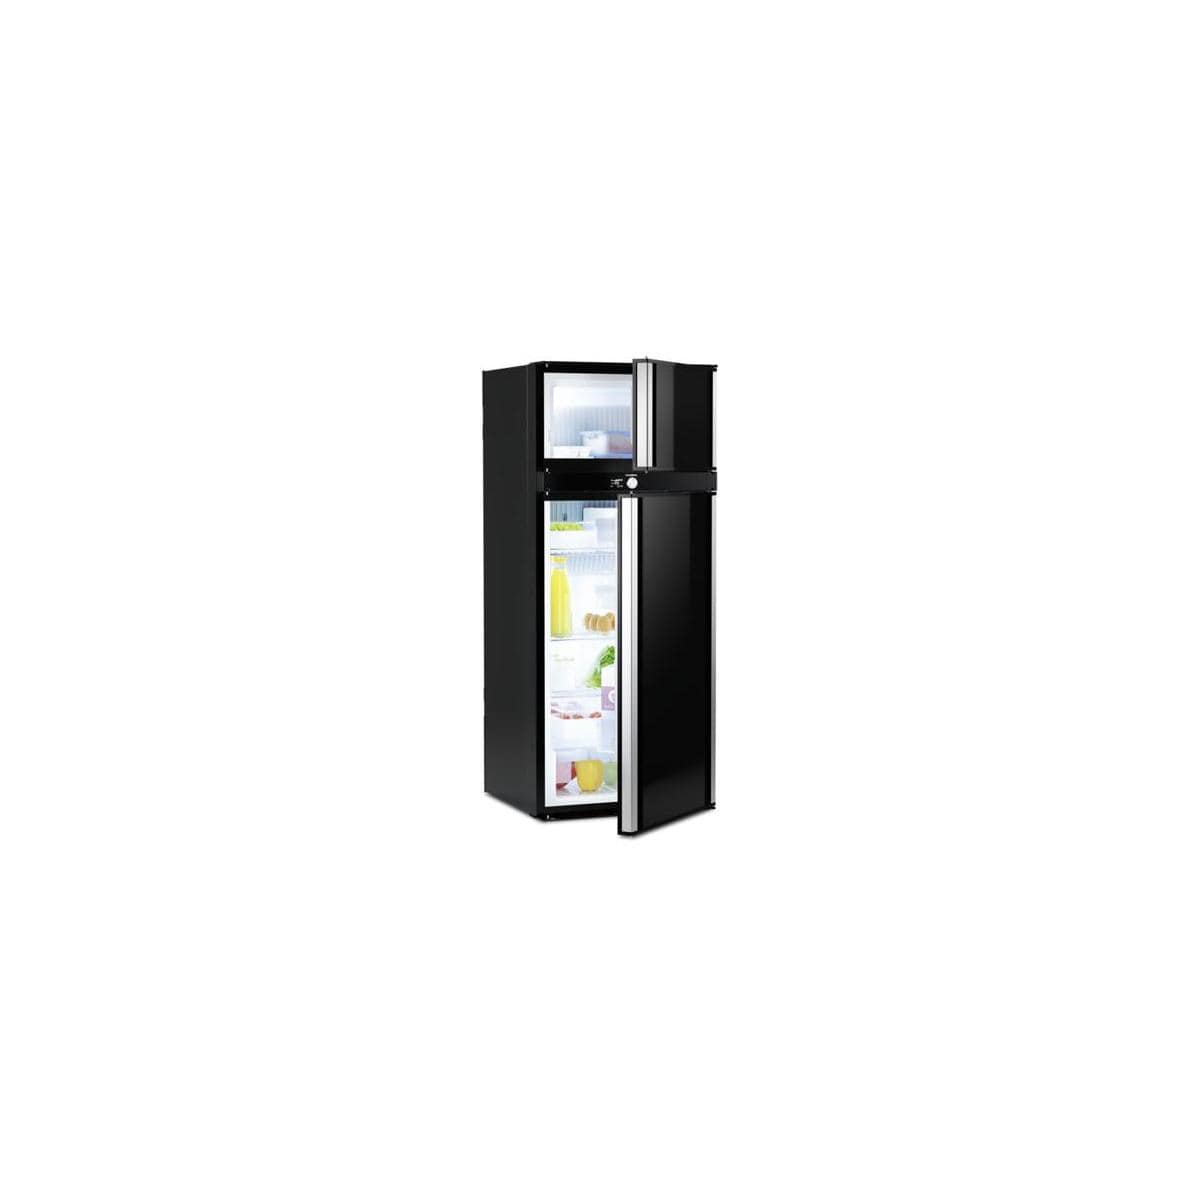 Dometic RMDT 10.5 X Absorberkühlschrank mit Backofen – Ersatzteile